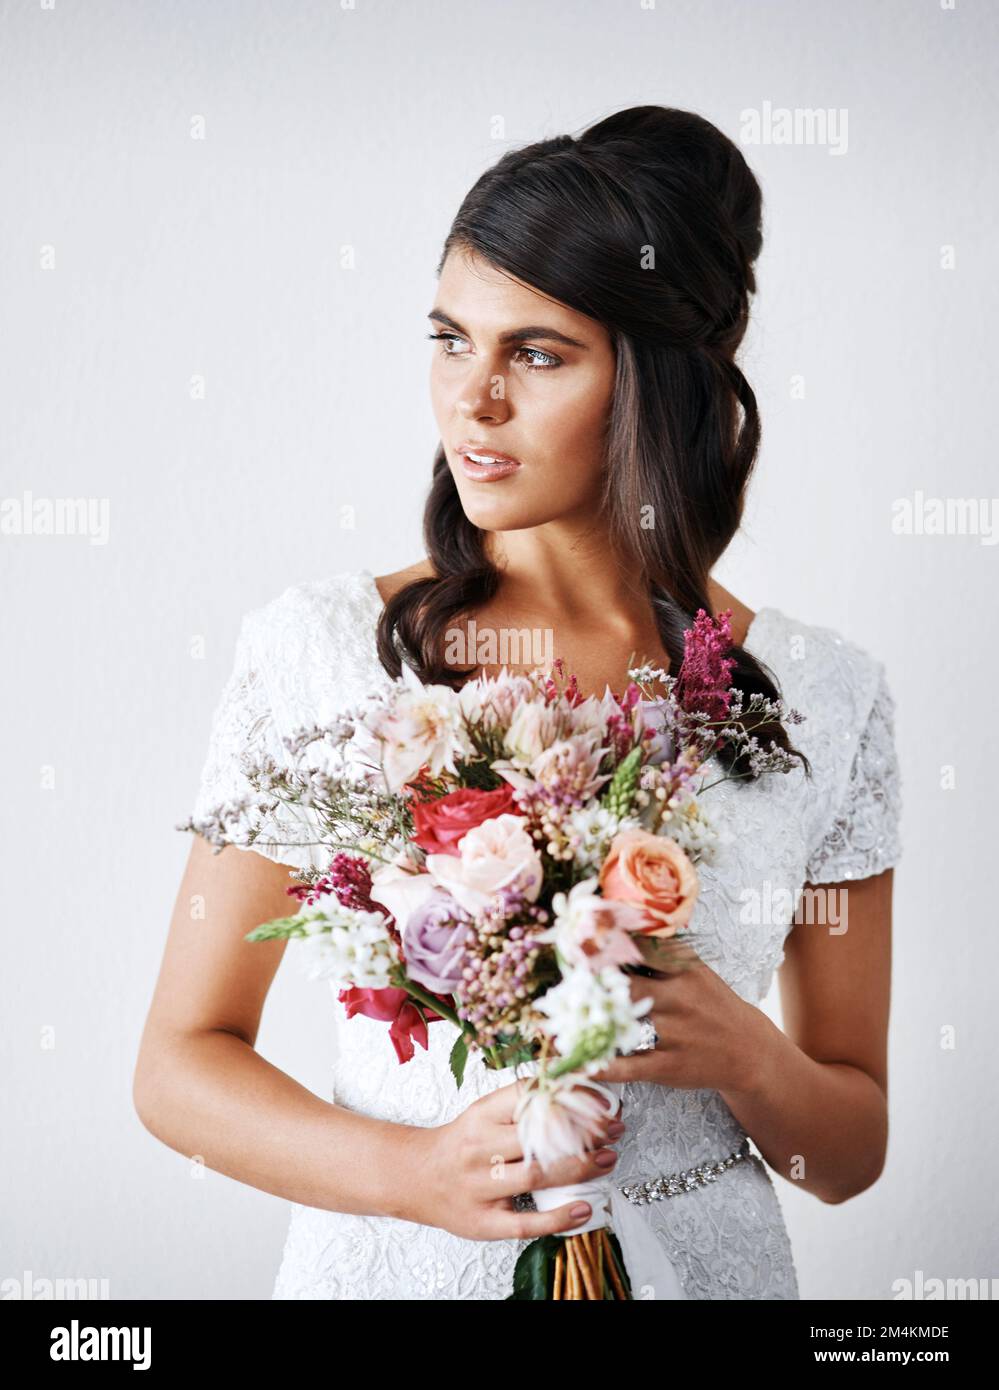 Je suis en train du faire. Studio portrait d'une jeune mariée tenant un bouquet de fleurs sur fond gris. Banque D'Images